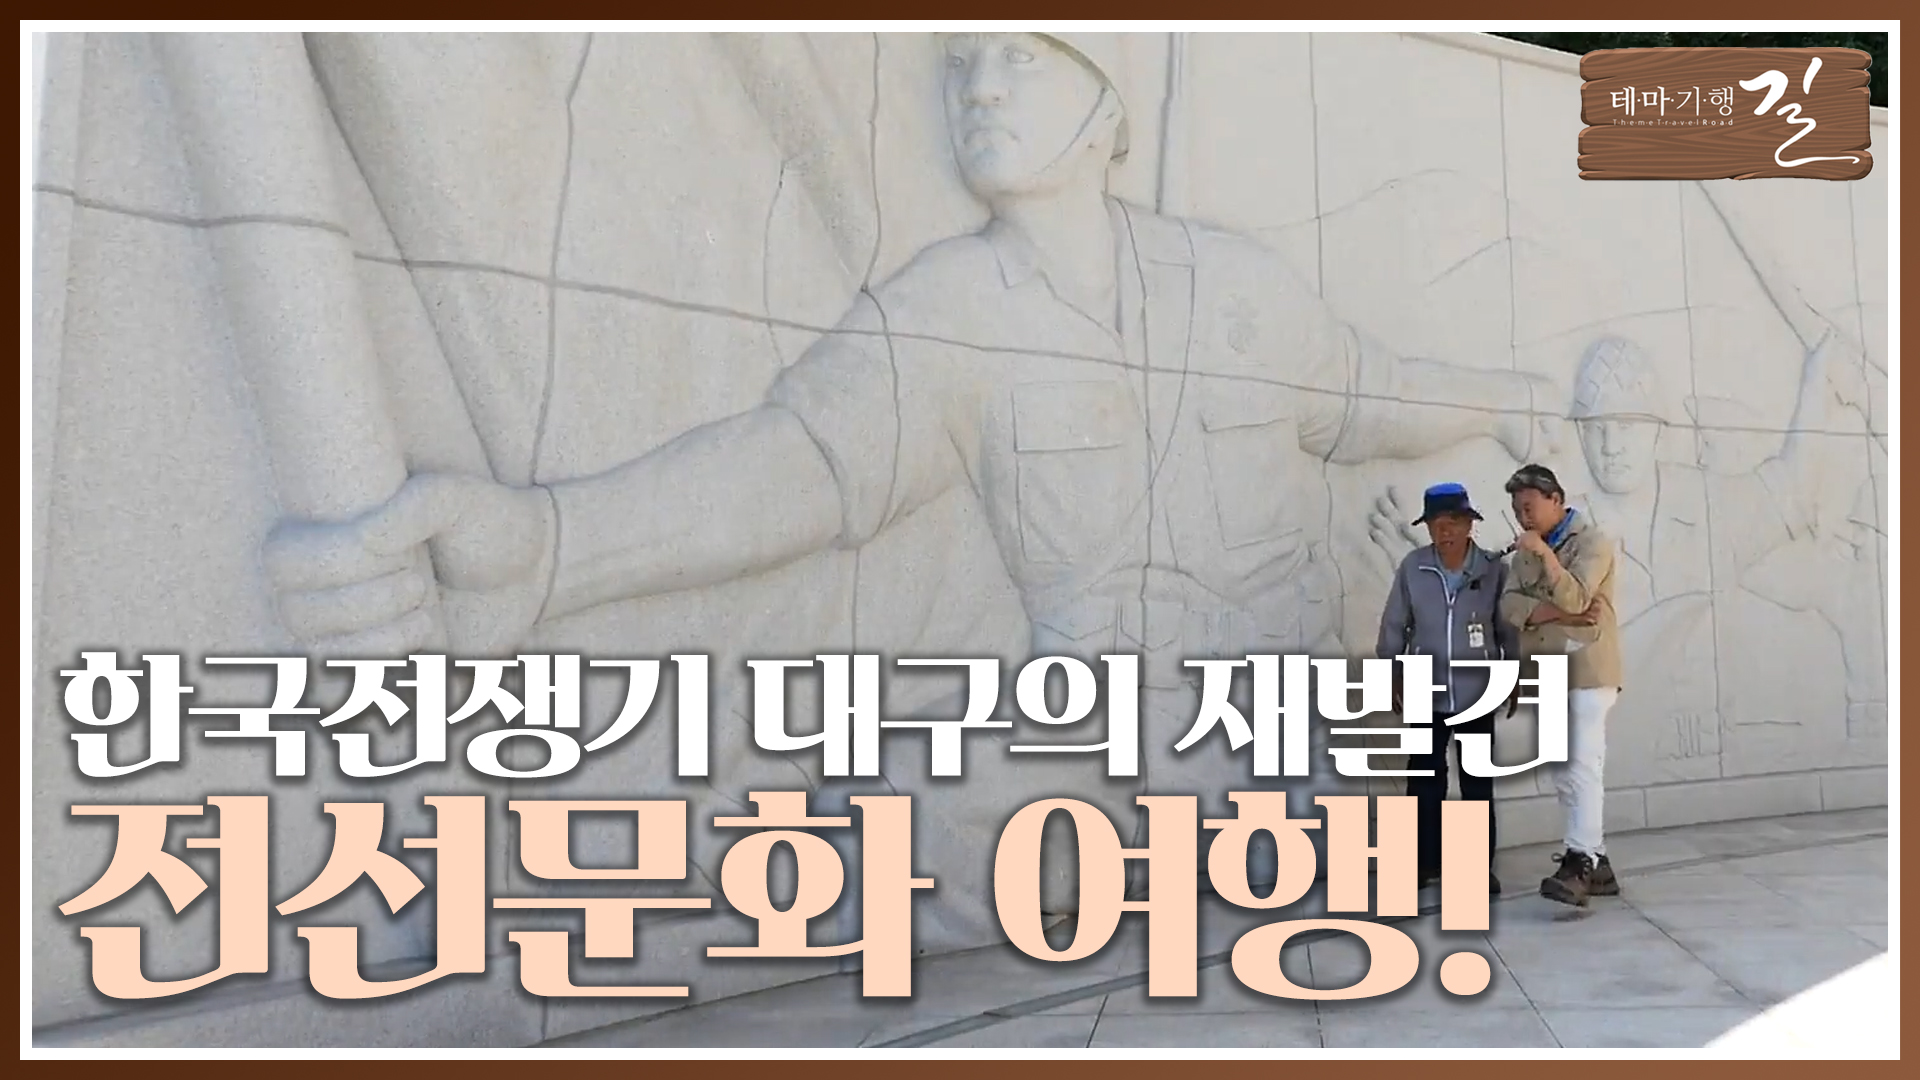 '한국전쟁기 대구의 재발견' - 대구 전선문화(戰線文化) 여행!